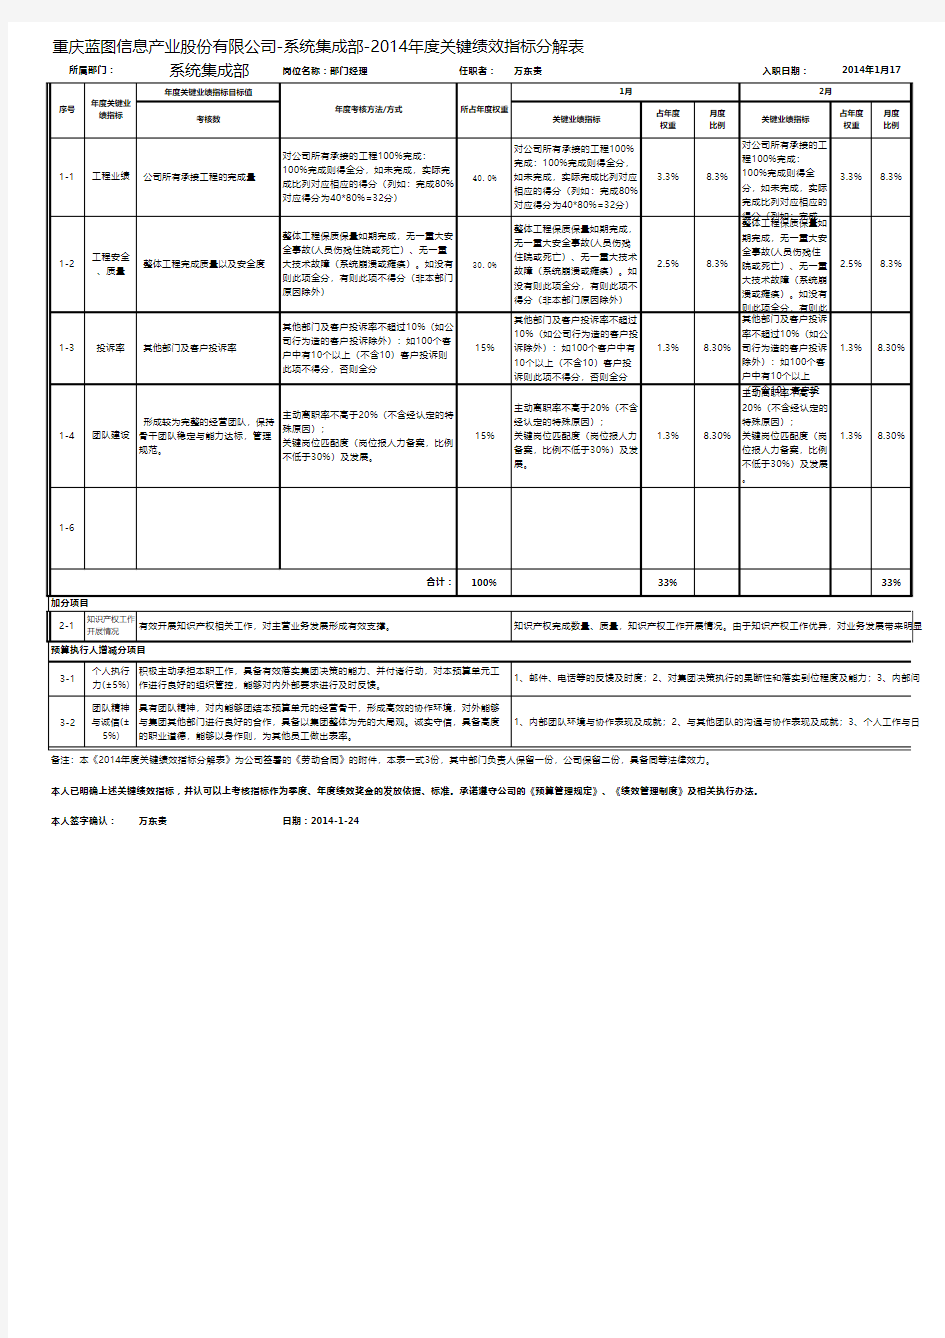 2014部门绩效考核表(系统集成部)